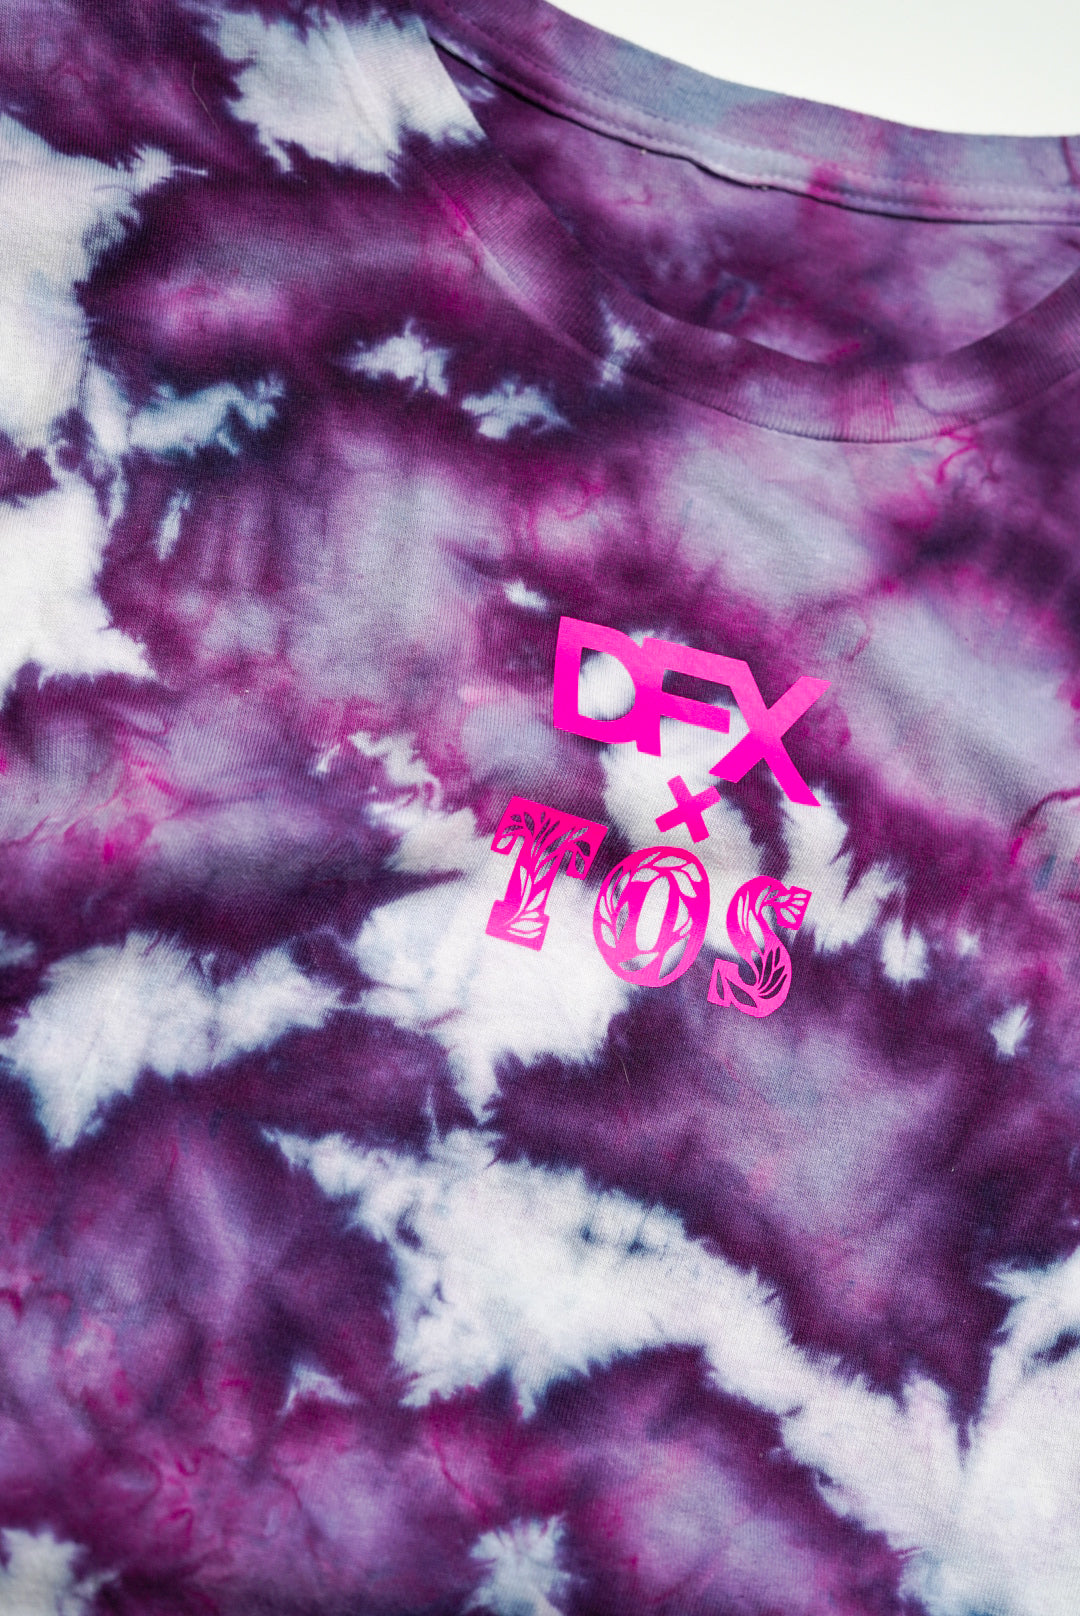 Purple Rheign | DFX X T.O.S Collab